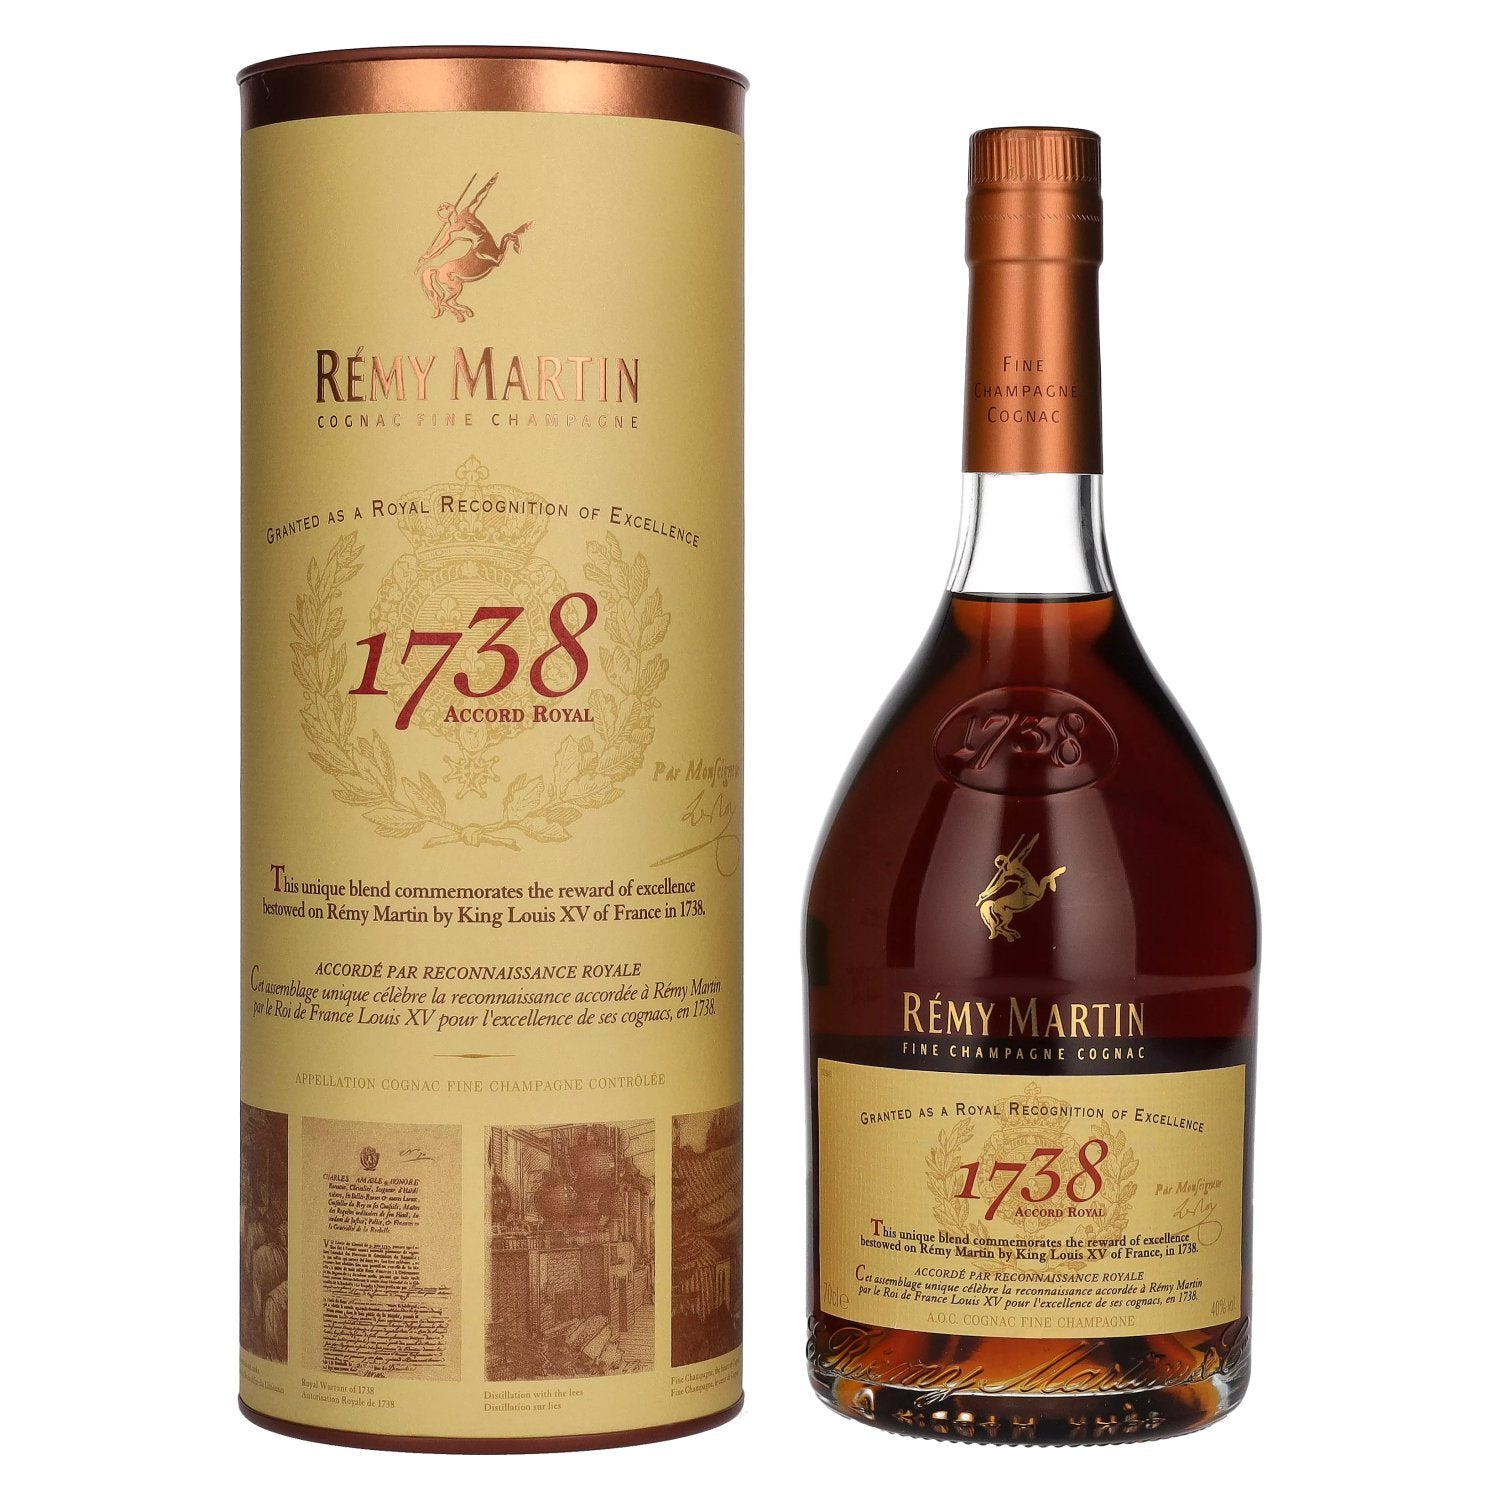 Remy Martin 1738 ACCORD ROYAL Cognac Fine Champagne 40% Vol. 0,7l in Giftbox